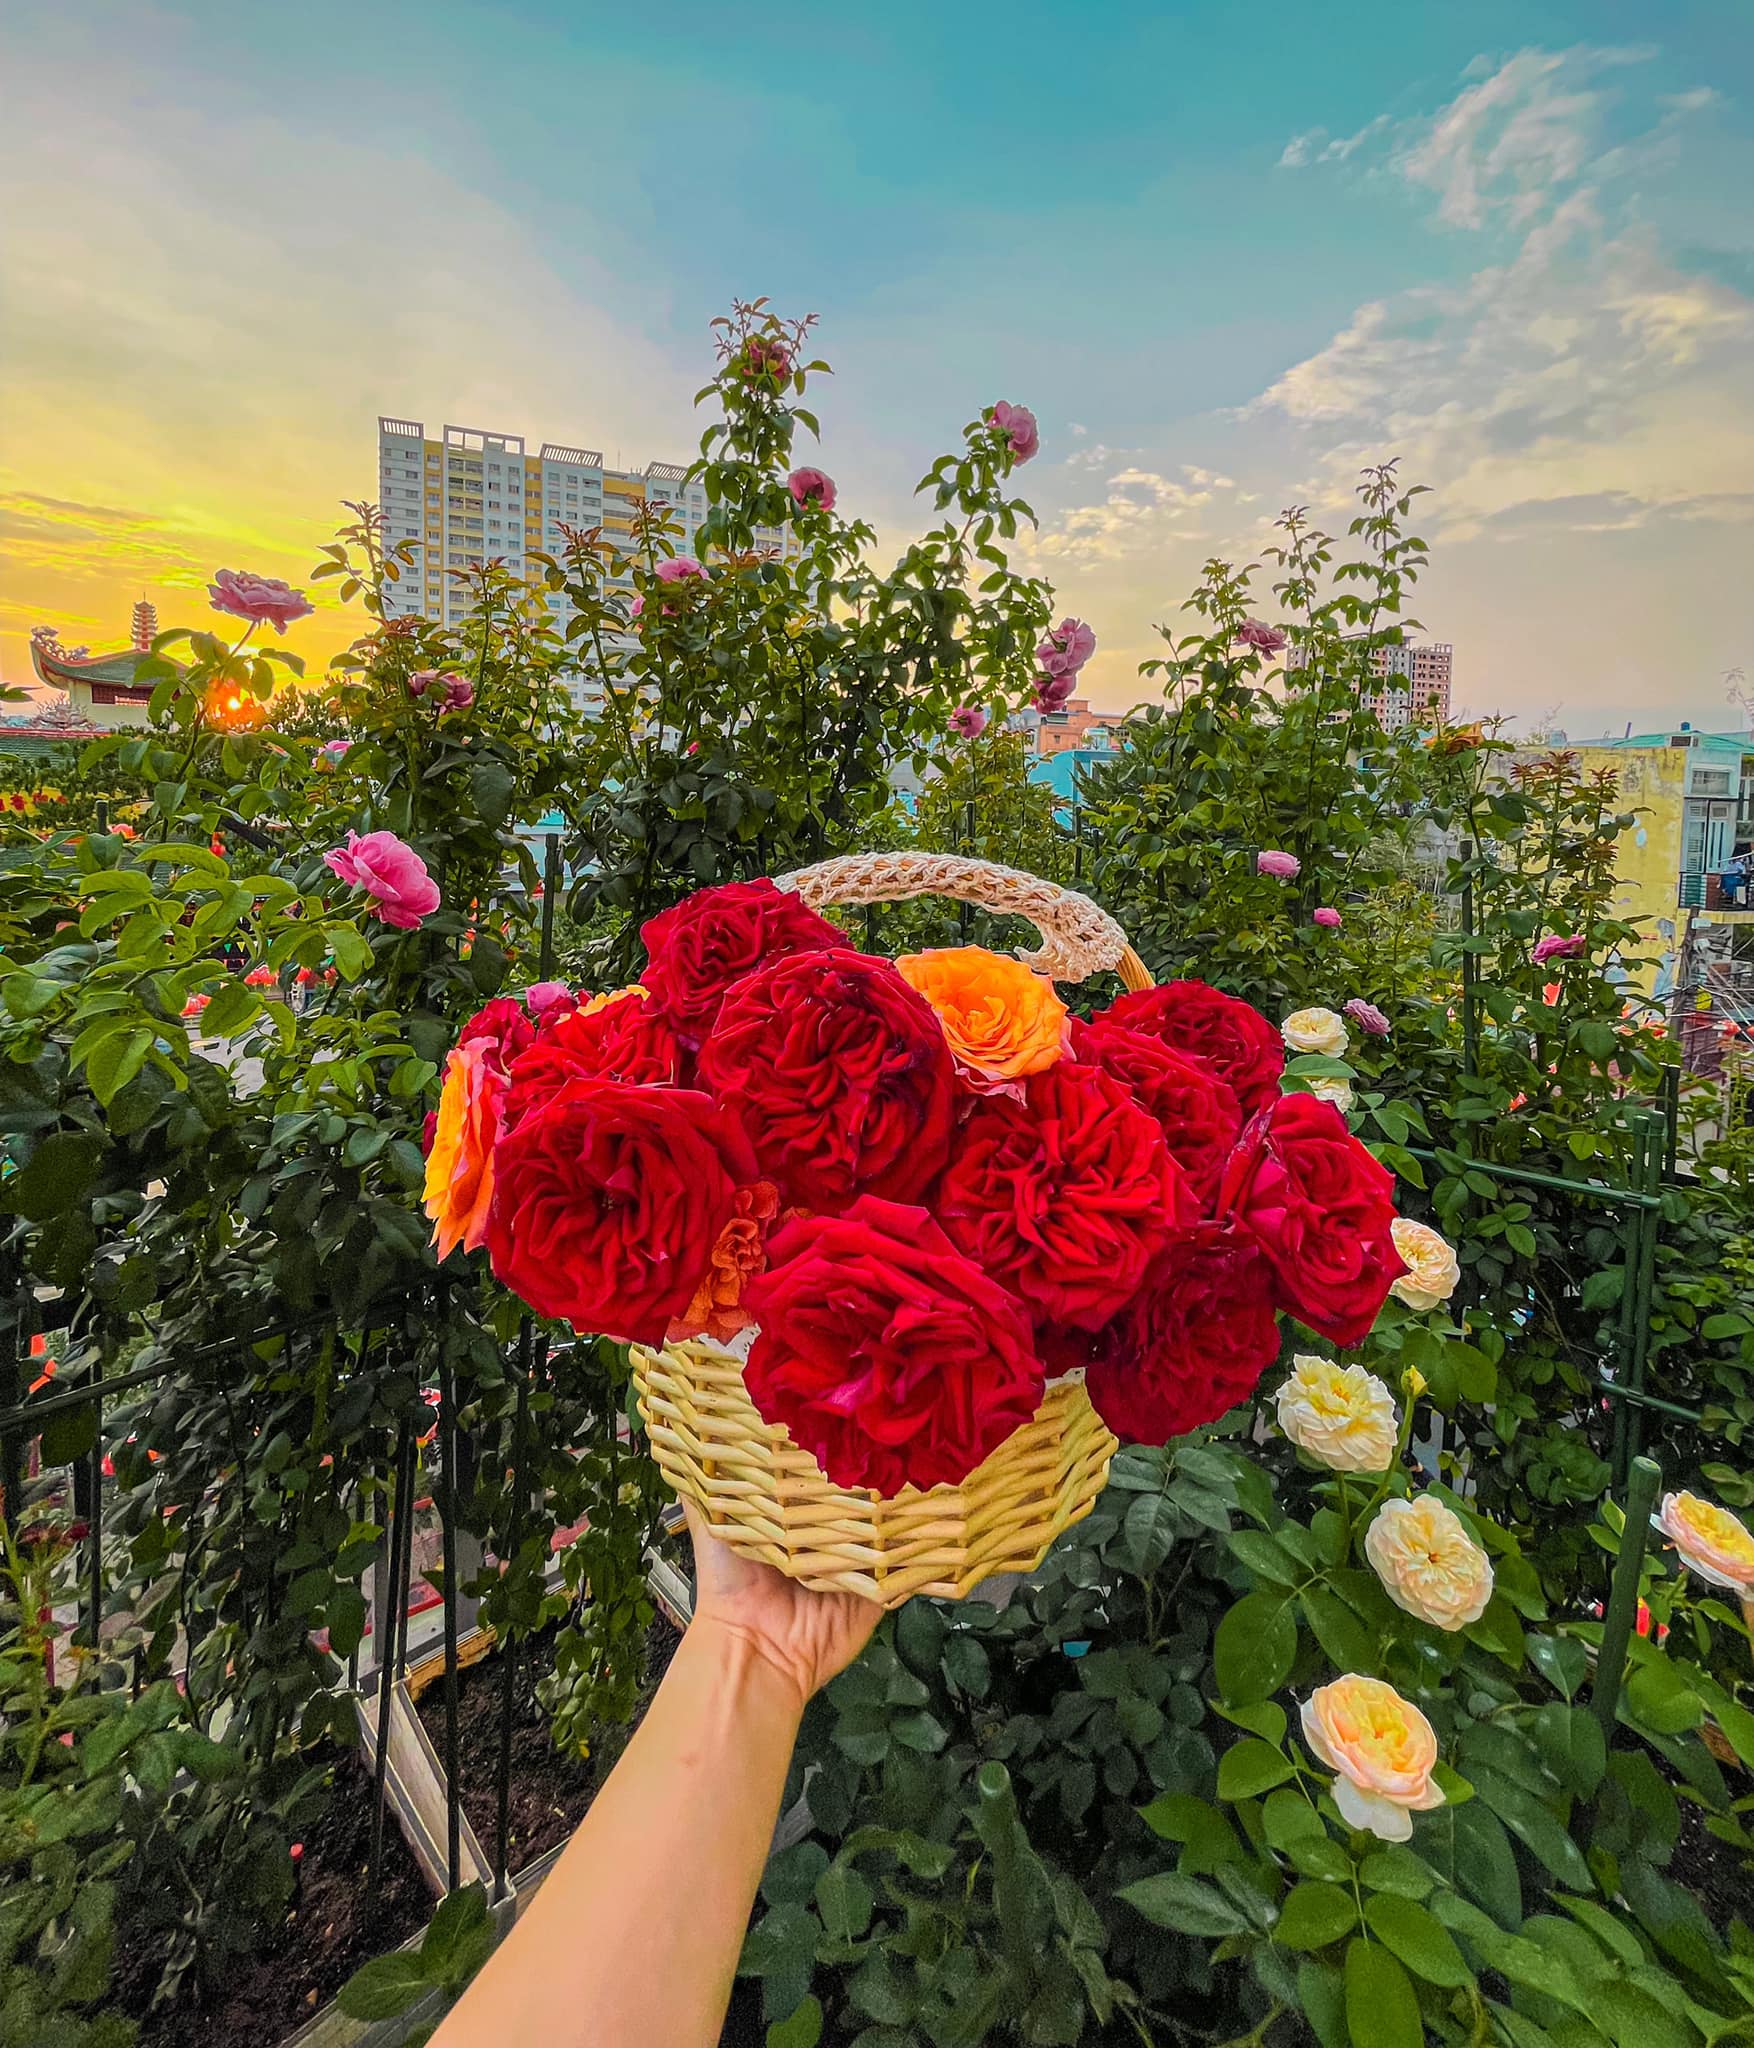 Khu vườn hoa hồng đẹp ngây ngất trên sân thượng ở TP HCM - Ảnh 18.